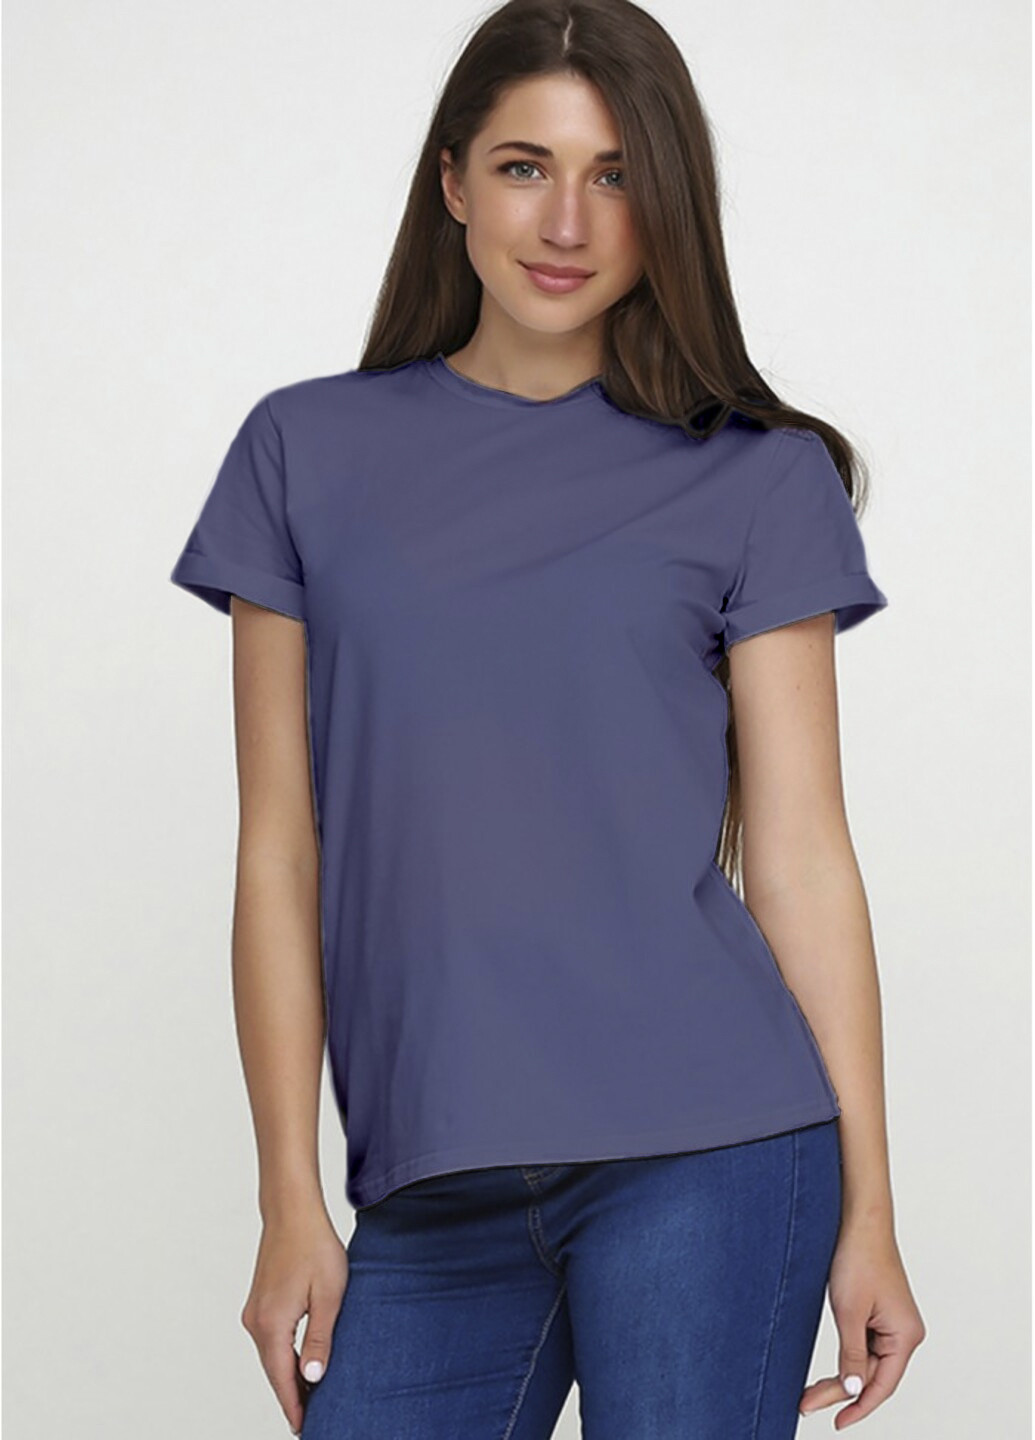 Светло-фиолетовая всесезон женская футболка ж563-24 серо-фиолетовая с коротким рукавом Malta Ж563-24 сірий св./фіолет